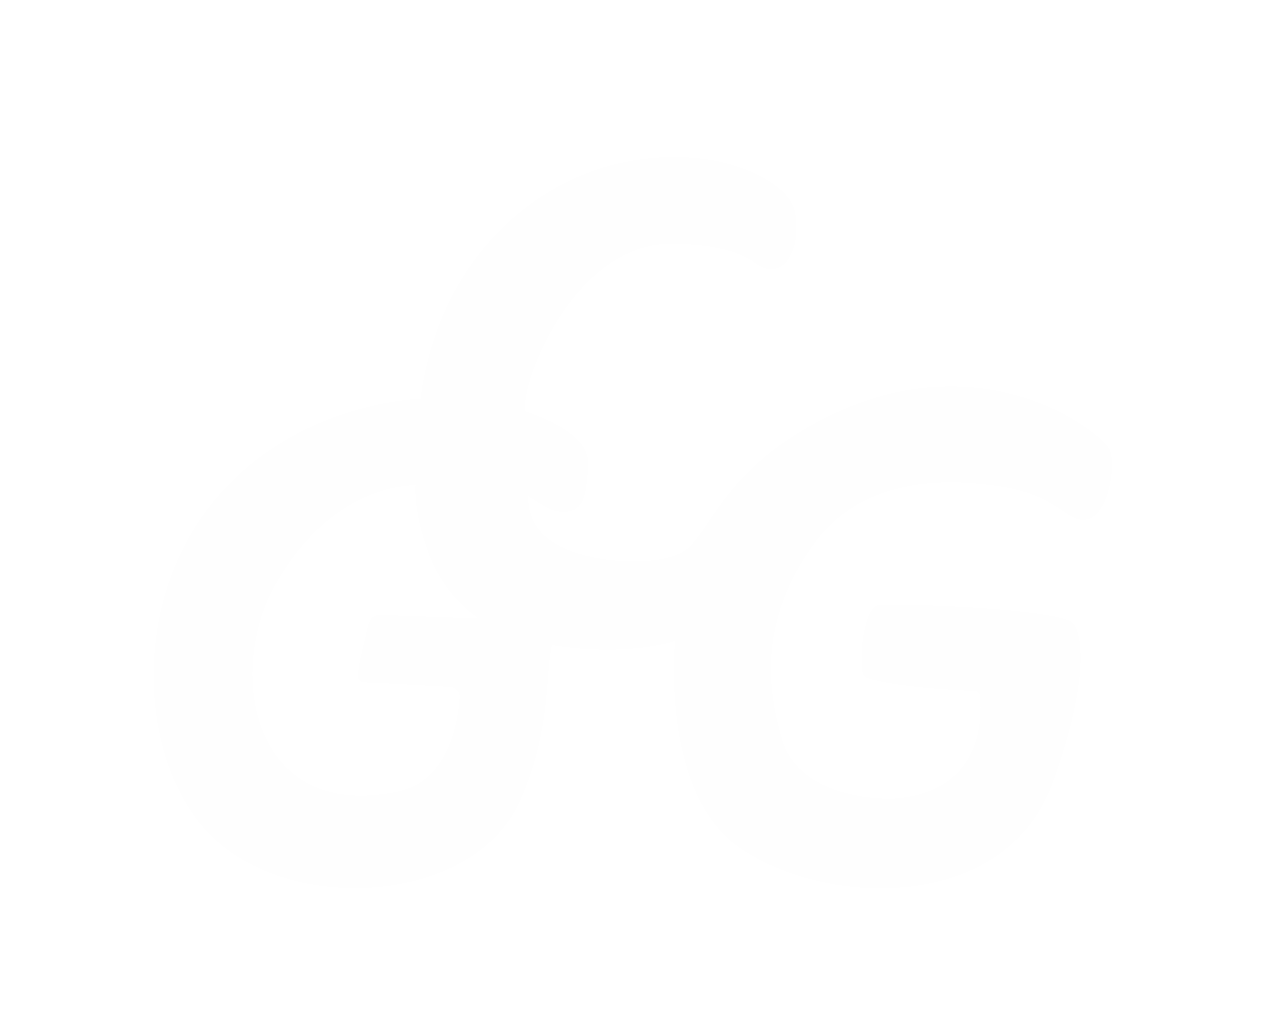 Charles George Group